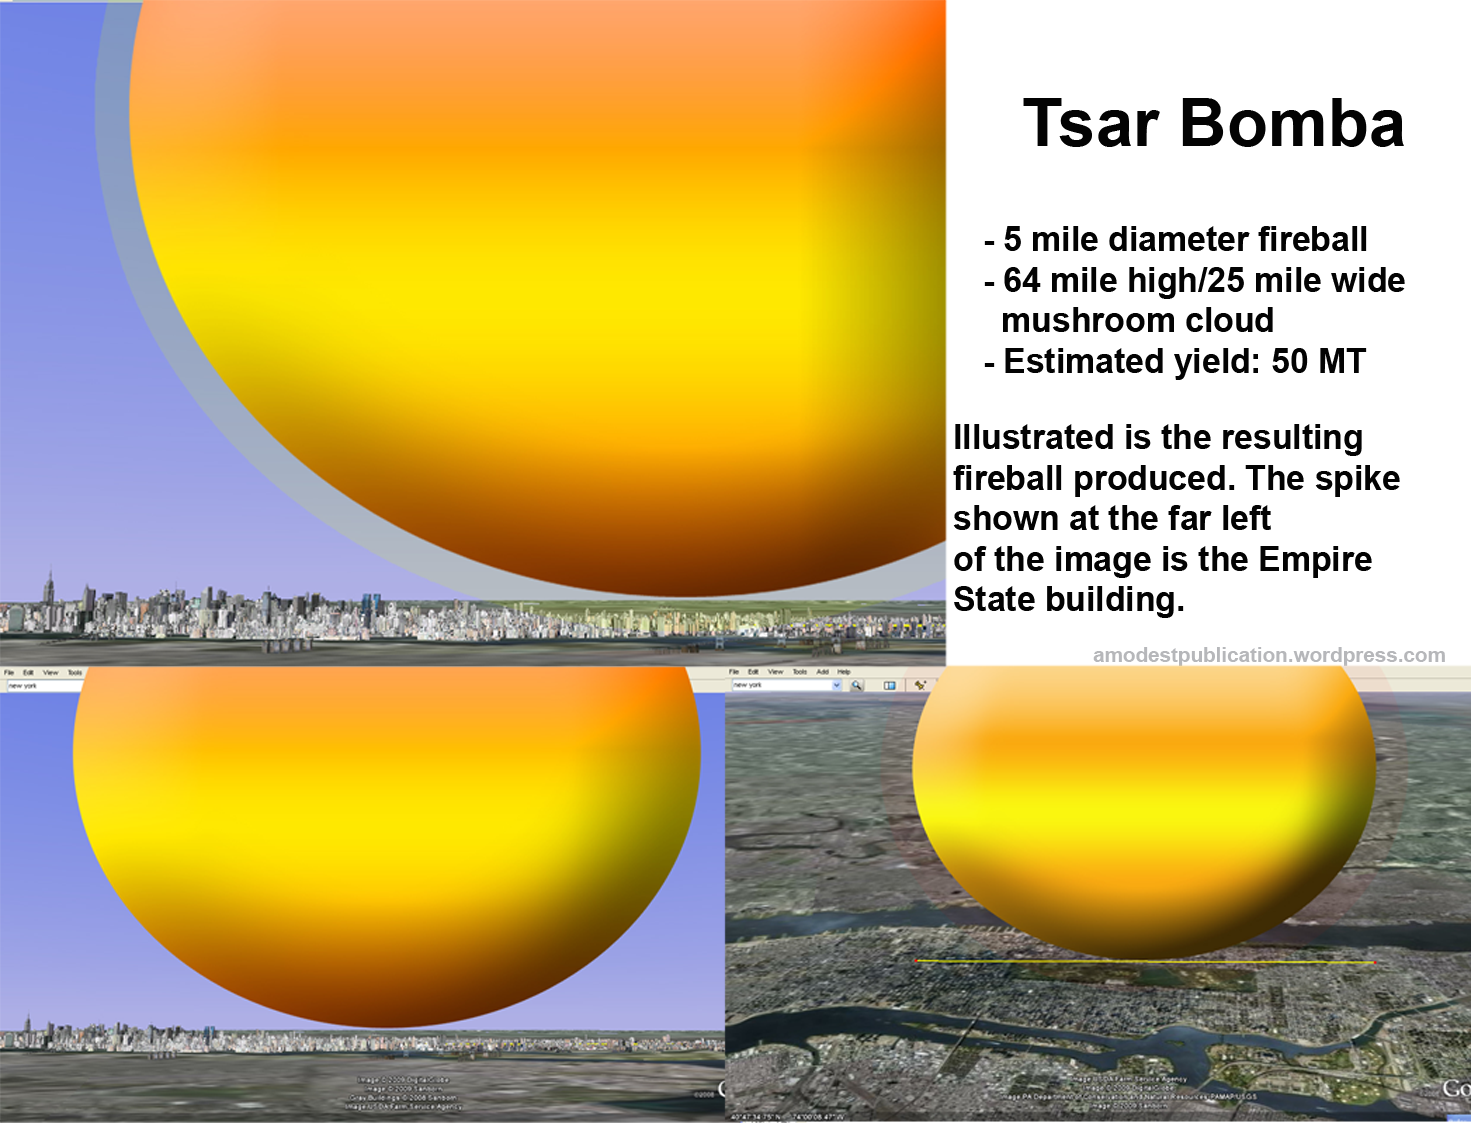 tsar-bomba-fireball-blast-scale-size2.png